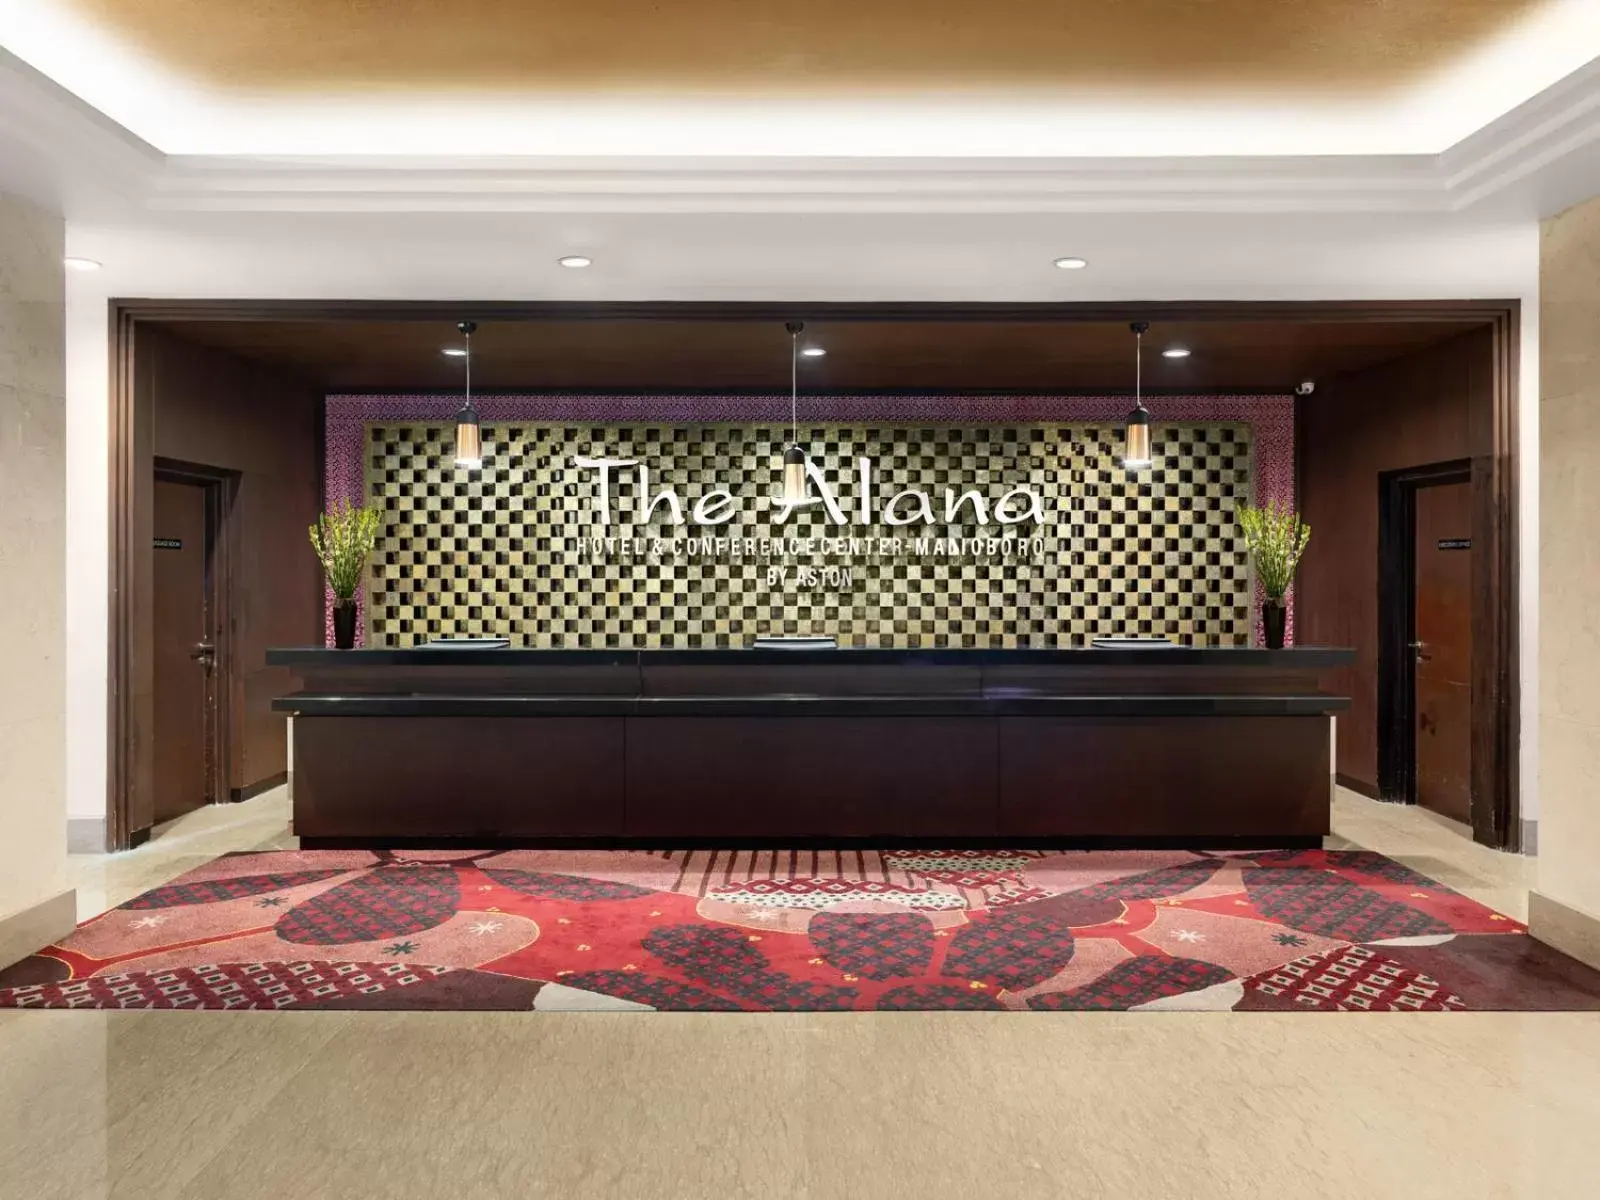 Lobby or reception, Lobby/Reception in The Alana Hotel & Conference Center Malioboro Yogyakarta by ASTON